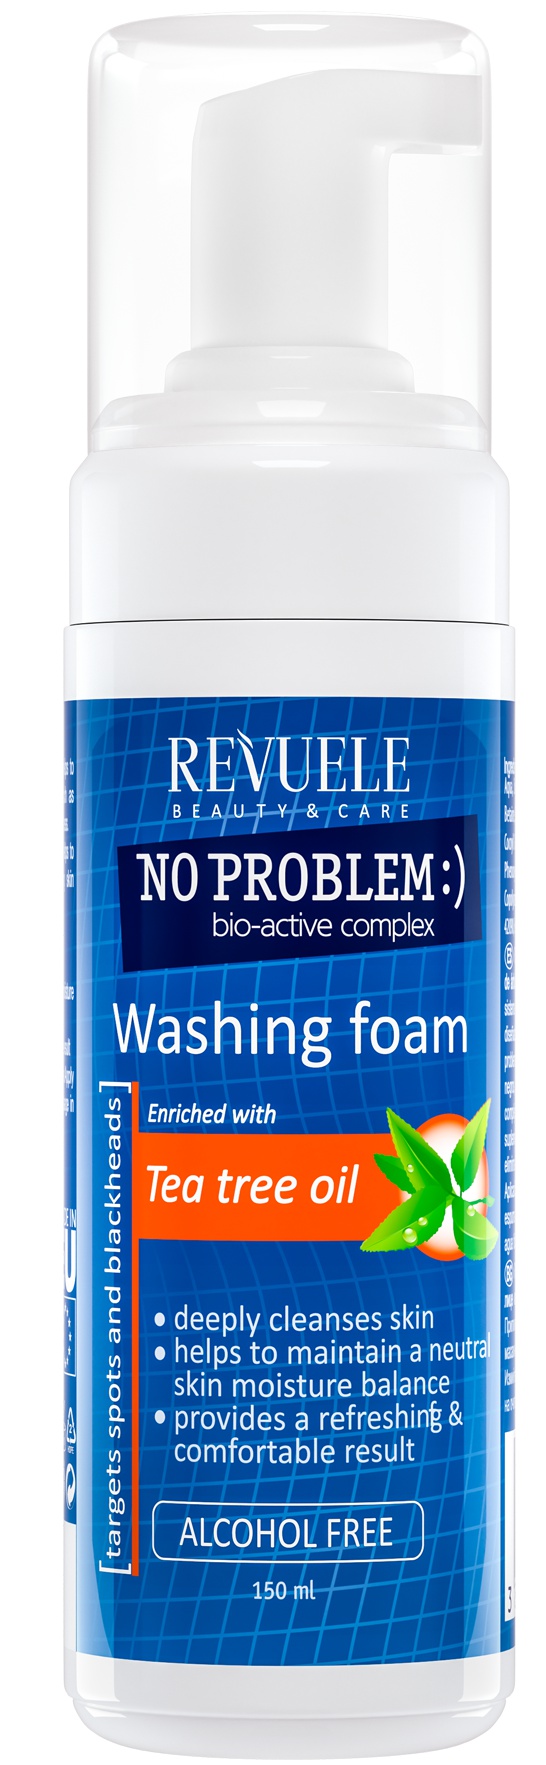 Revuele No Problem Washing Foam With Tea Tree Oil